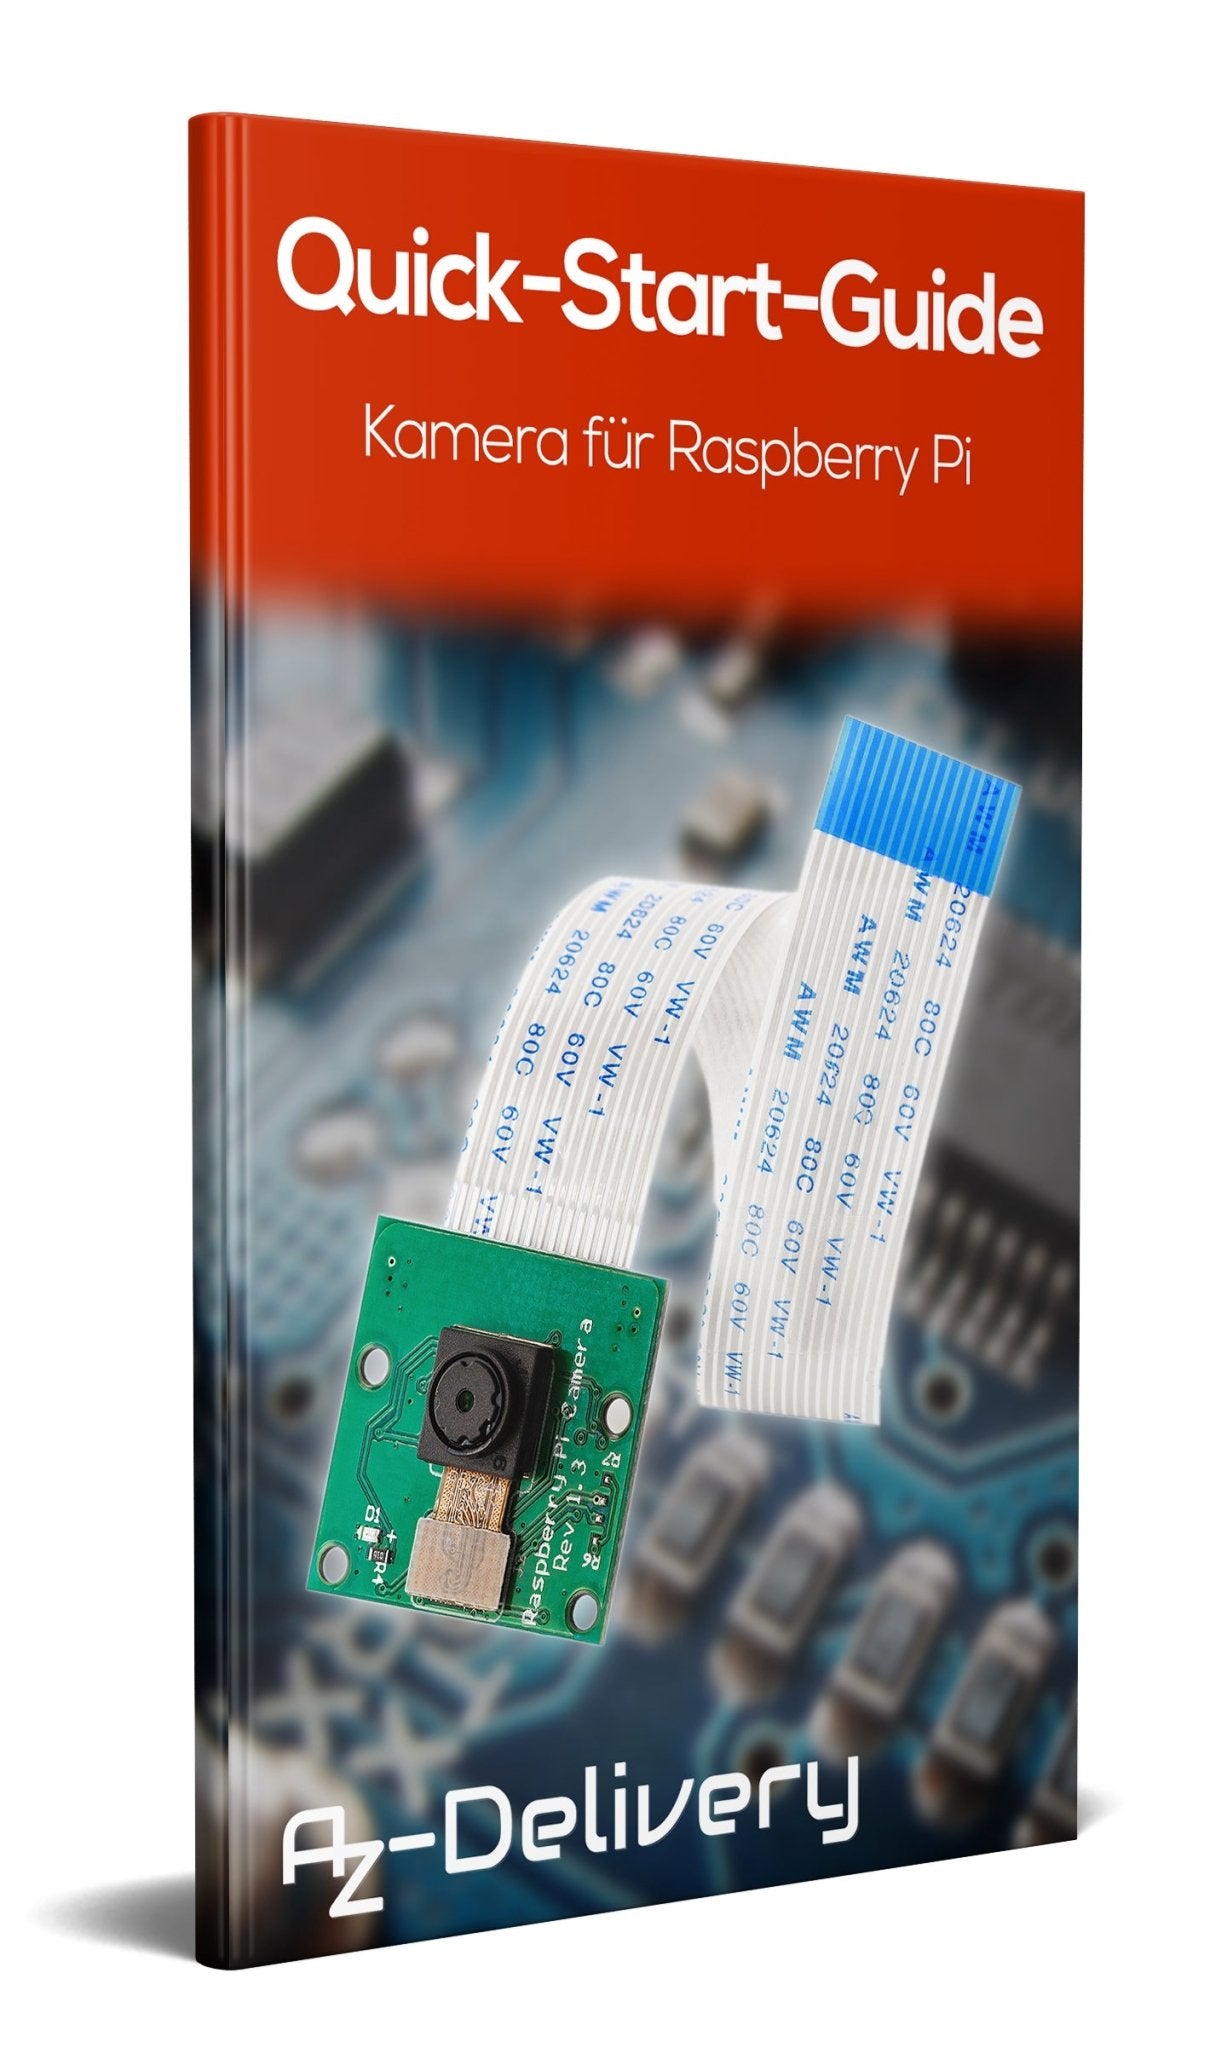 Kamera für Raspberry Pi - AZ-Delivery